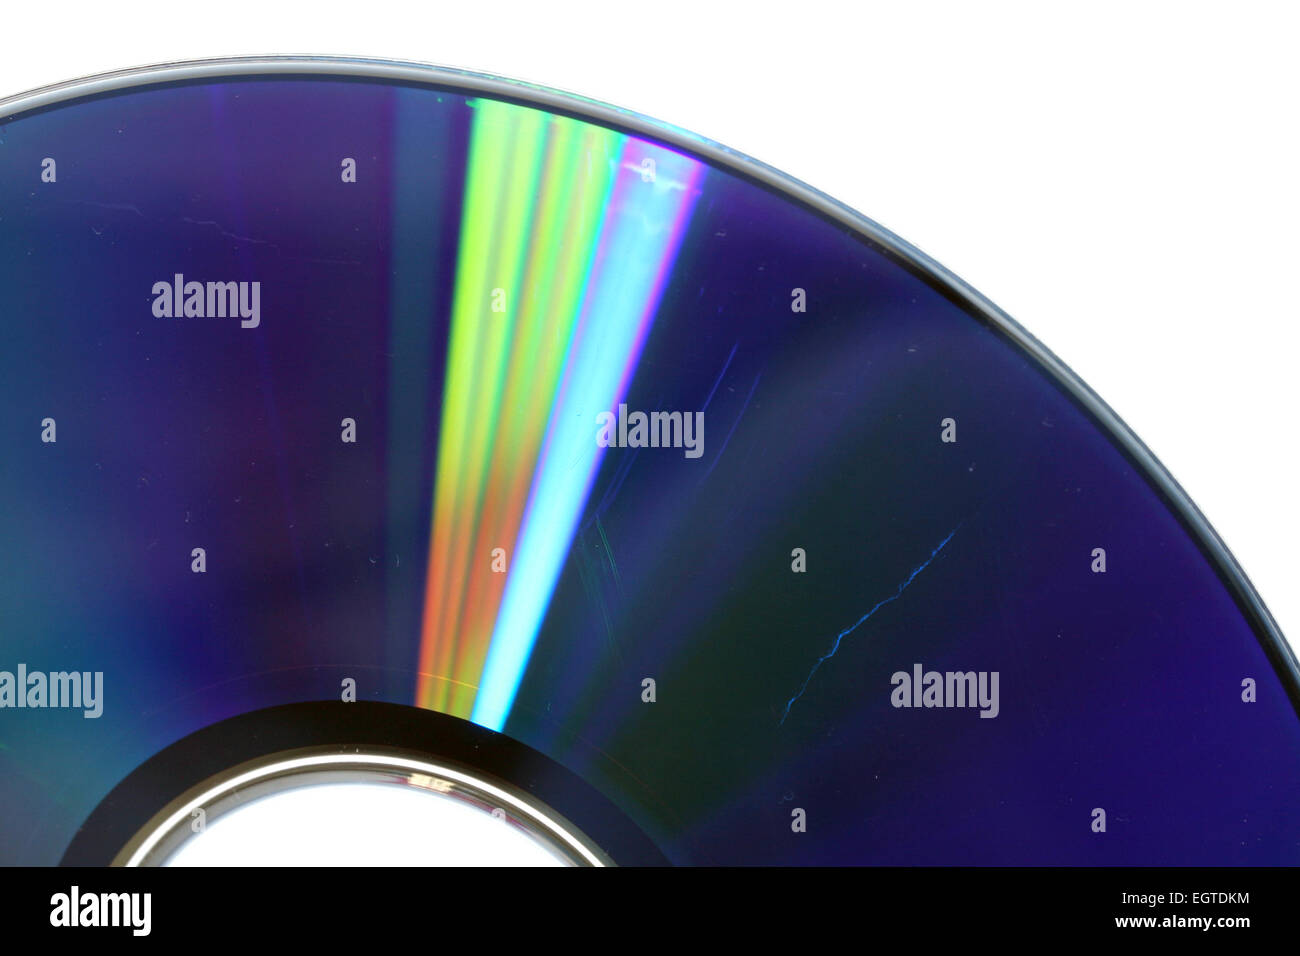 Le thème de la perte de données montrant la surface d'un CD égratigné Banque D'Images